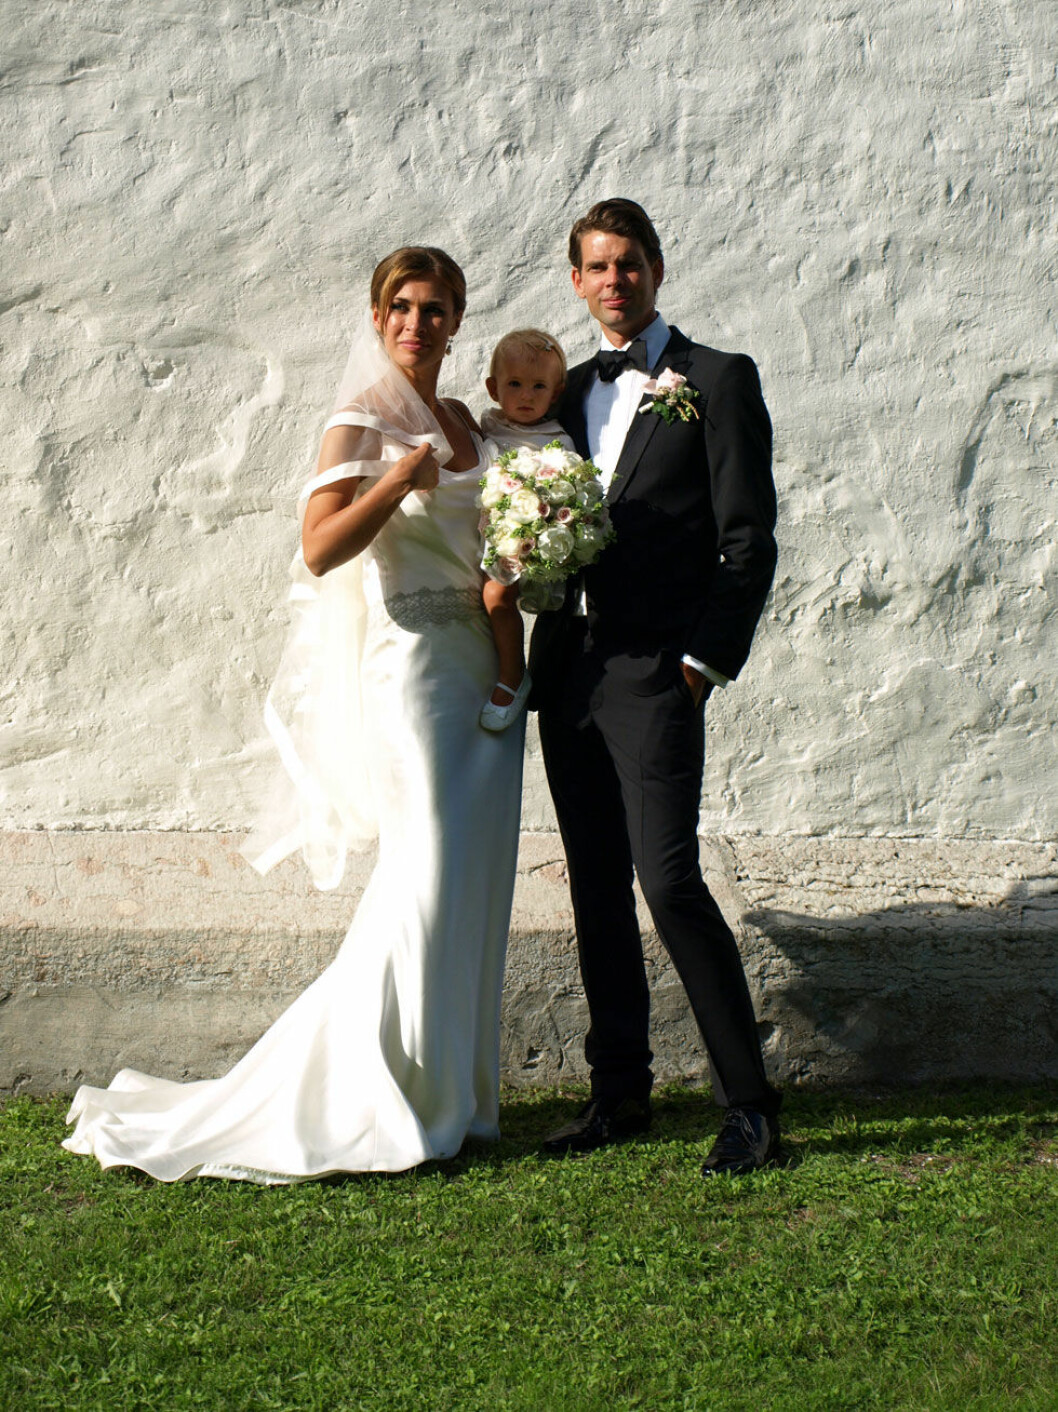 Amanda Schulmans och Megan Markle bar likande bröllopsklänningar.